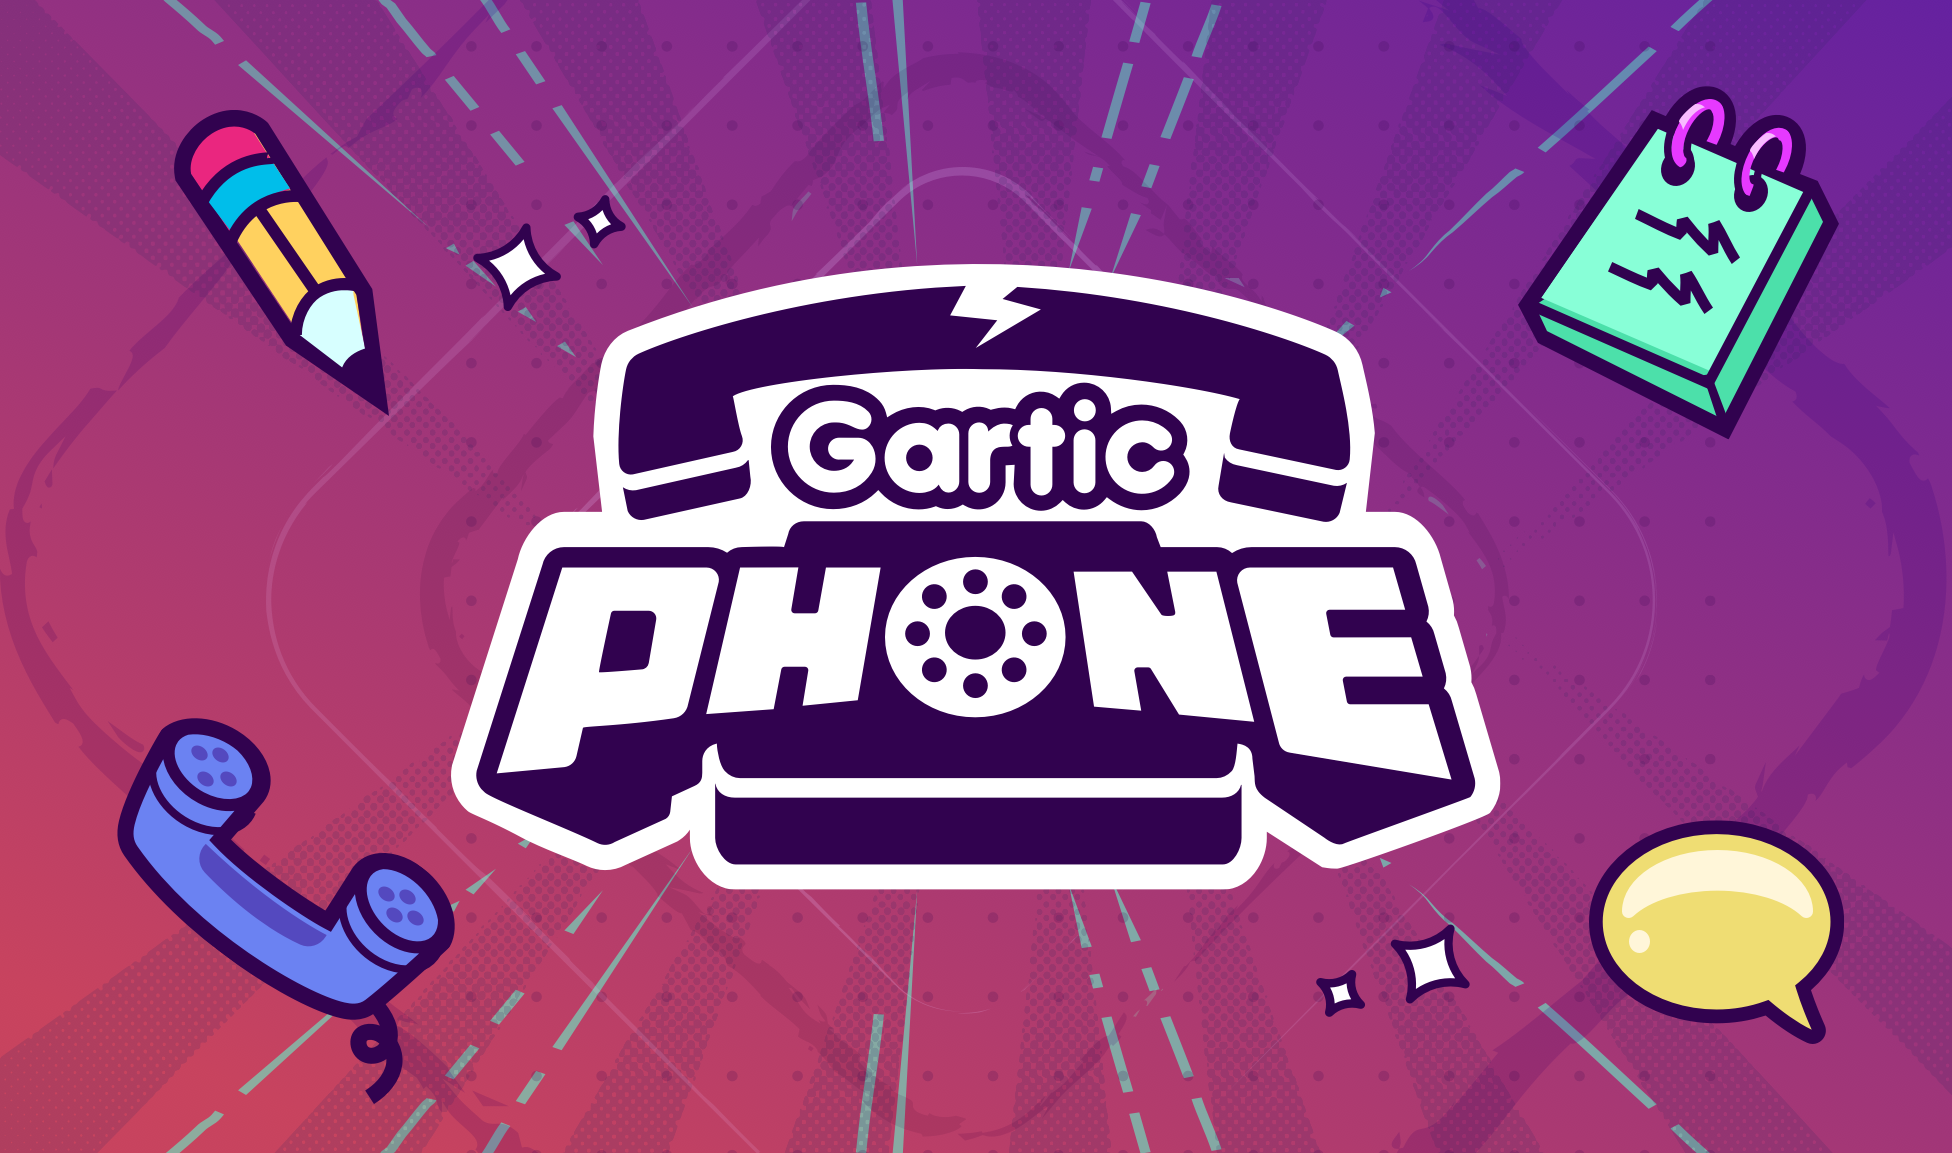 garticphone.com